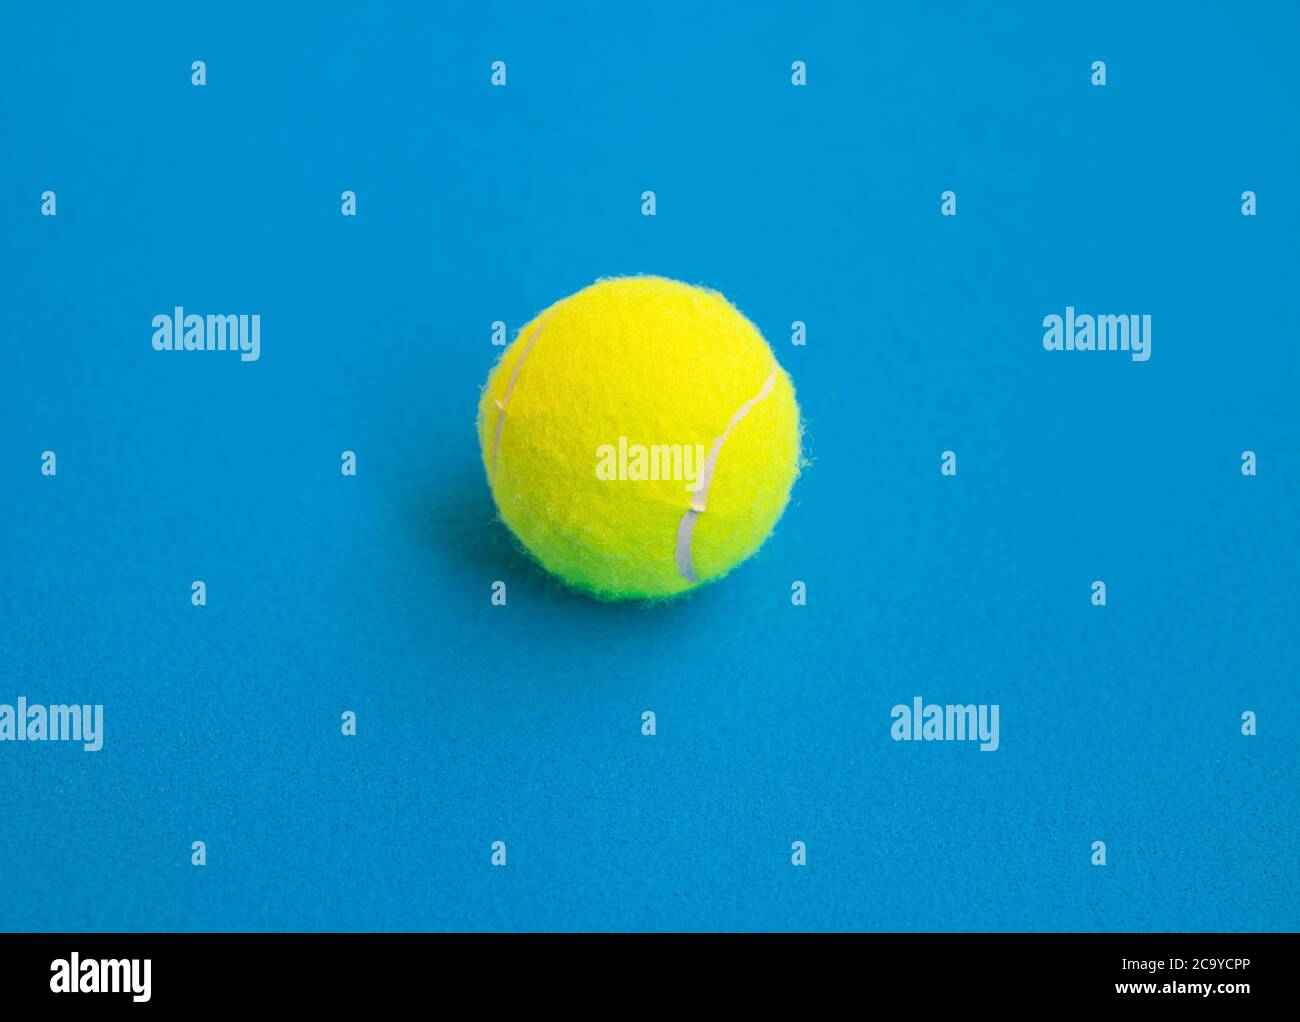 Une balle de tennis jaune isolée sur fond bleu Banque D'Images